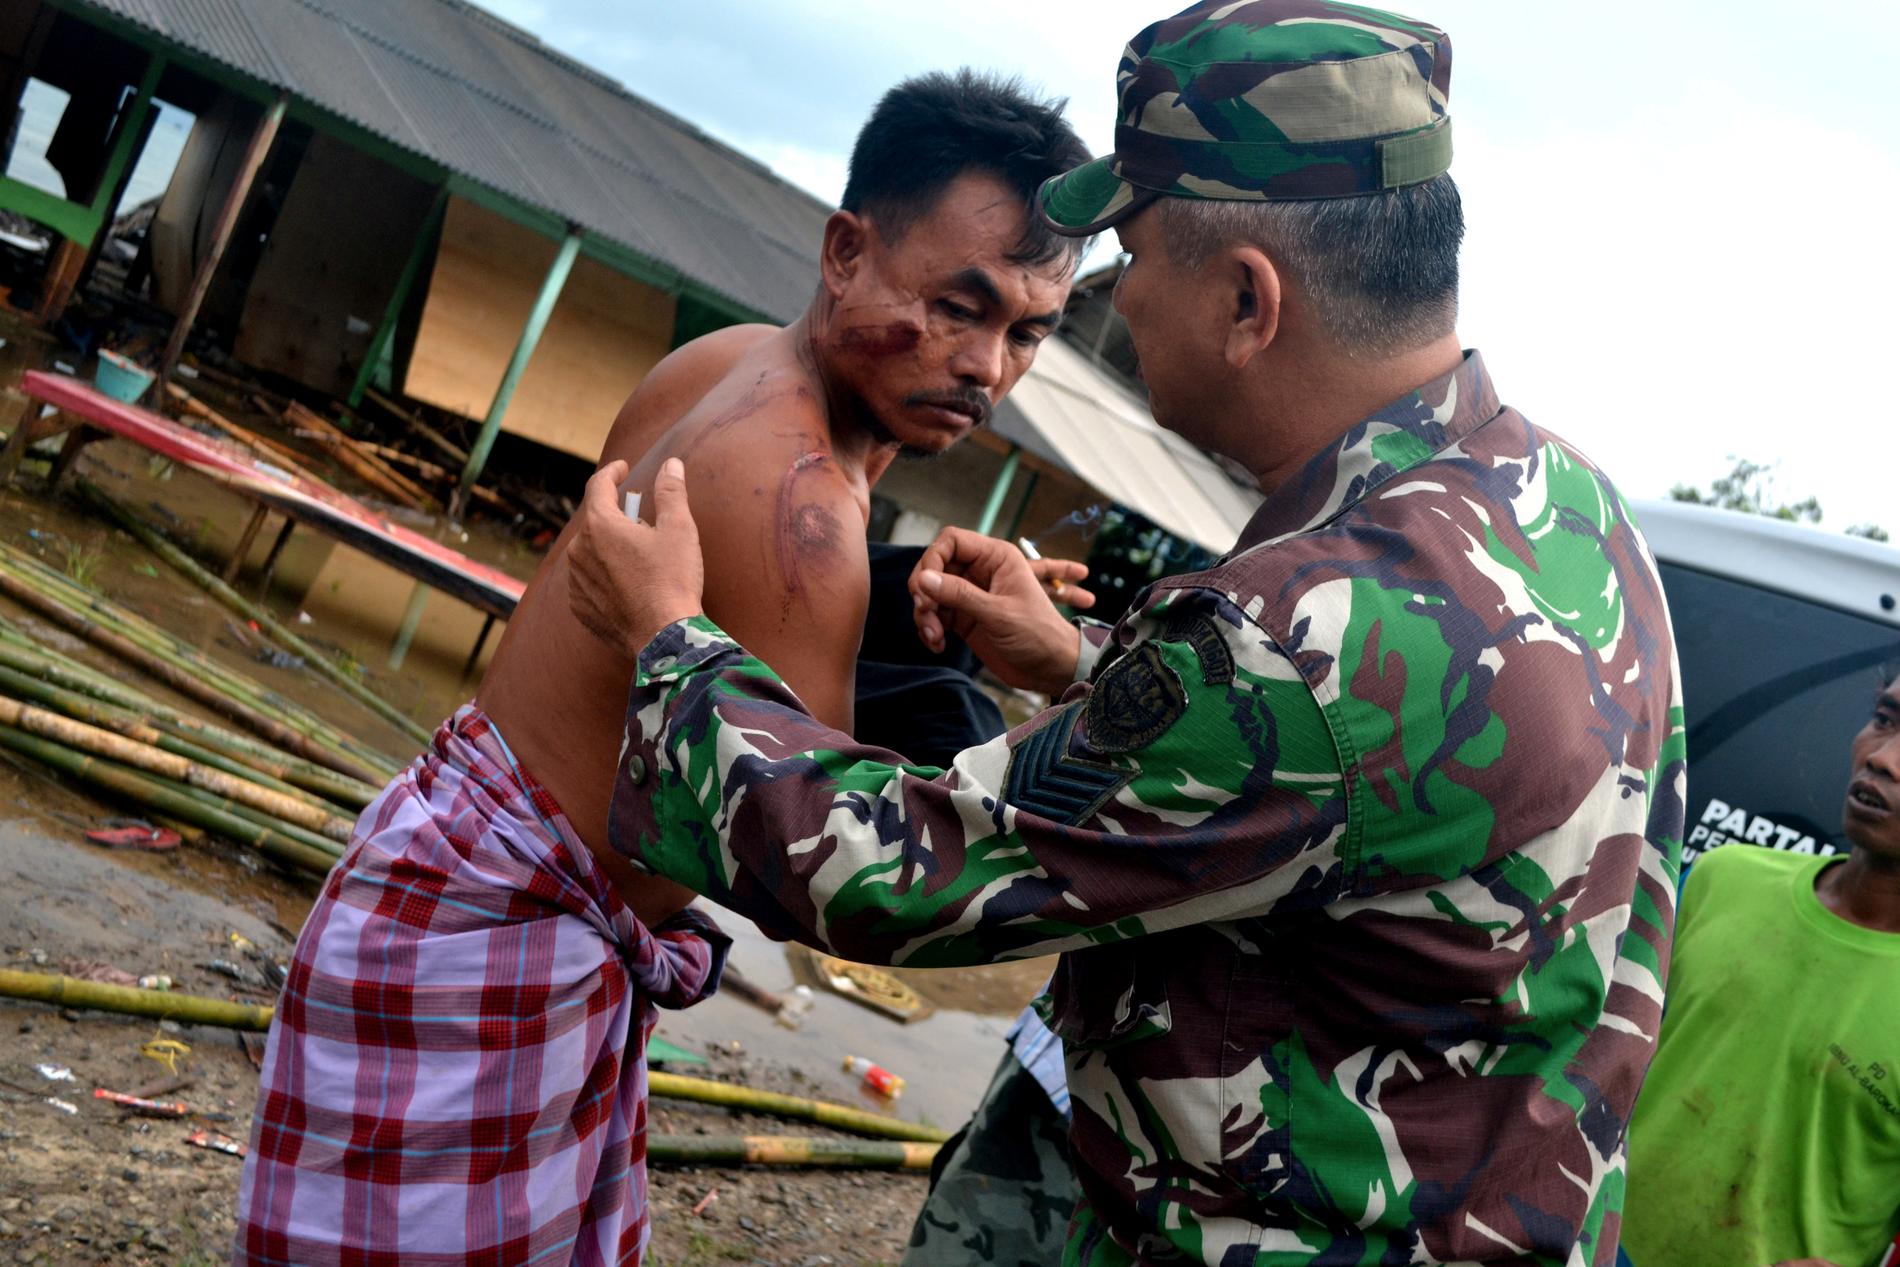 Minst 168 personer har dött efter att en tsunami nådde stränderna vid Sundasundet i Indonesien.